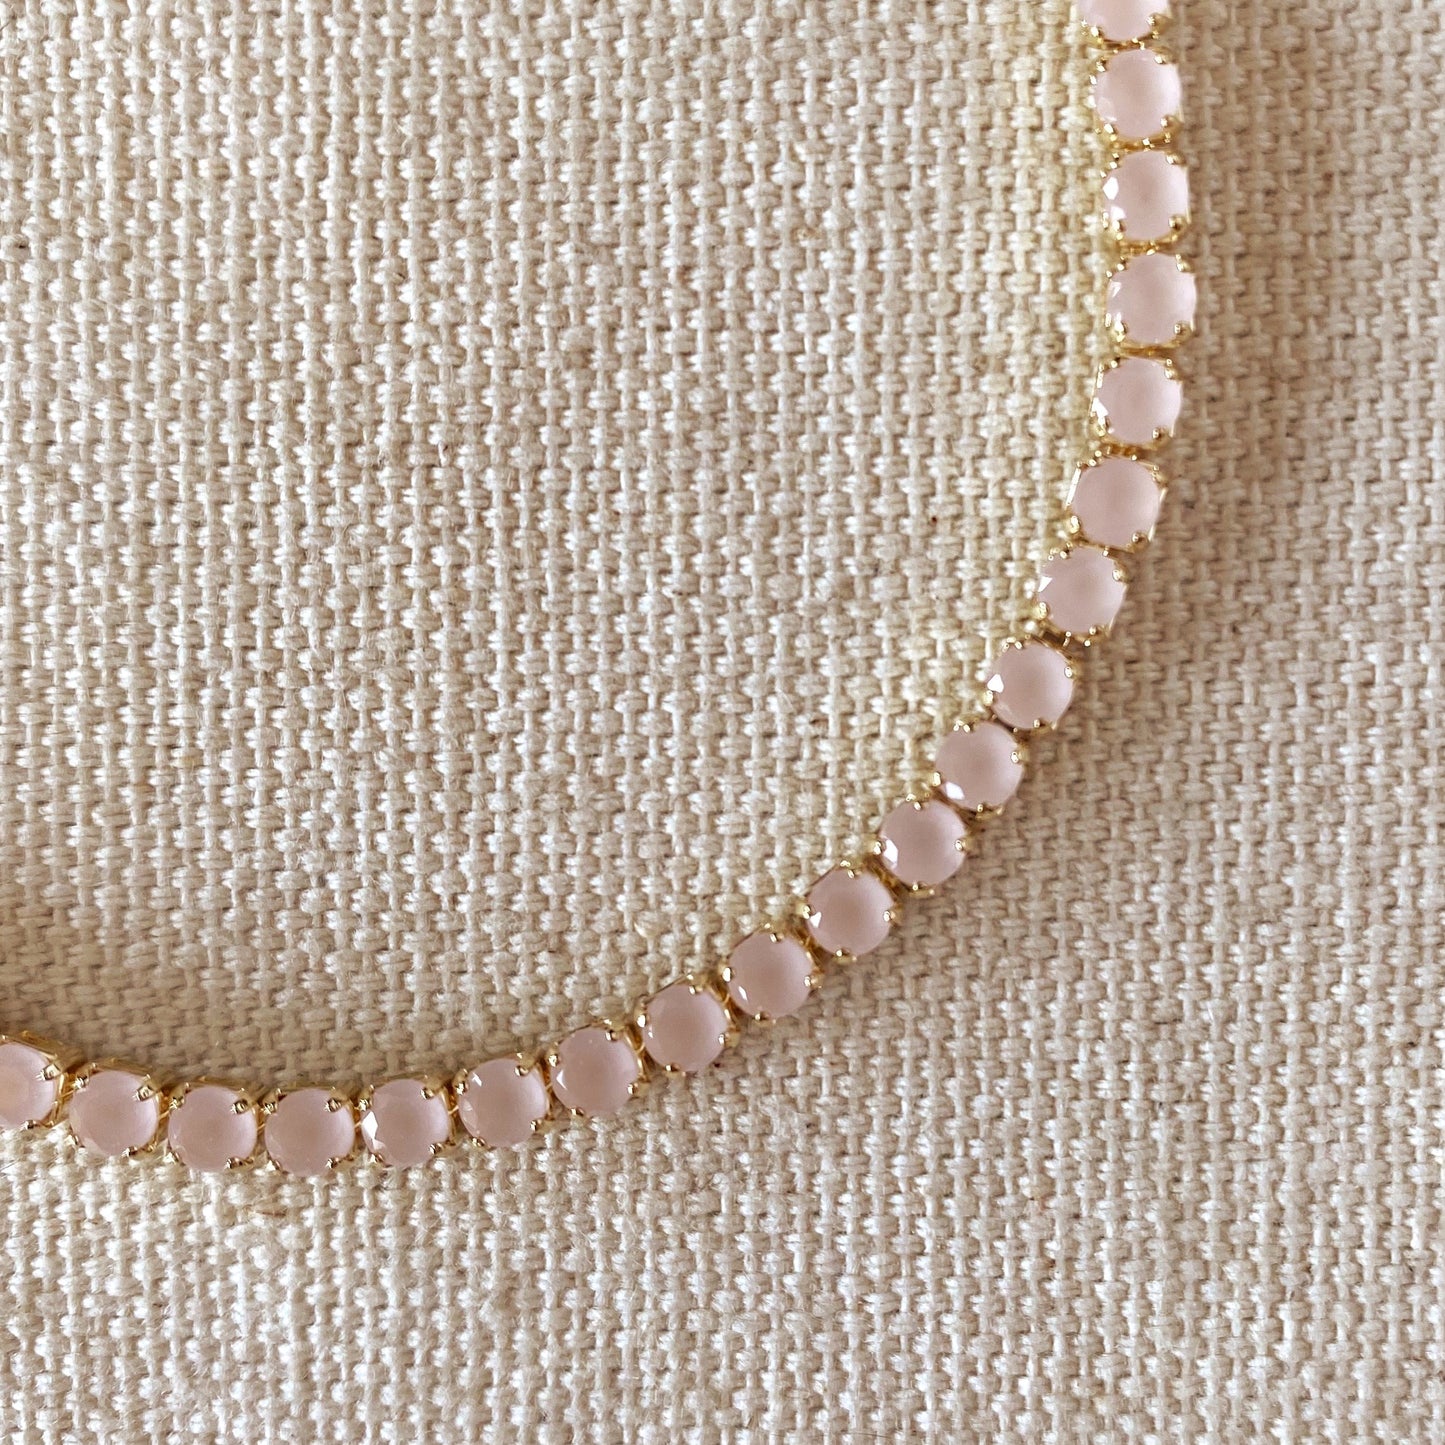 18k Gold Filled 3mm Cubic Zirconia Nude Pink Bracelet